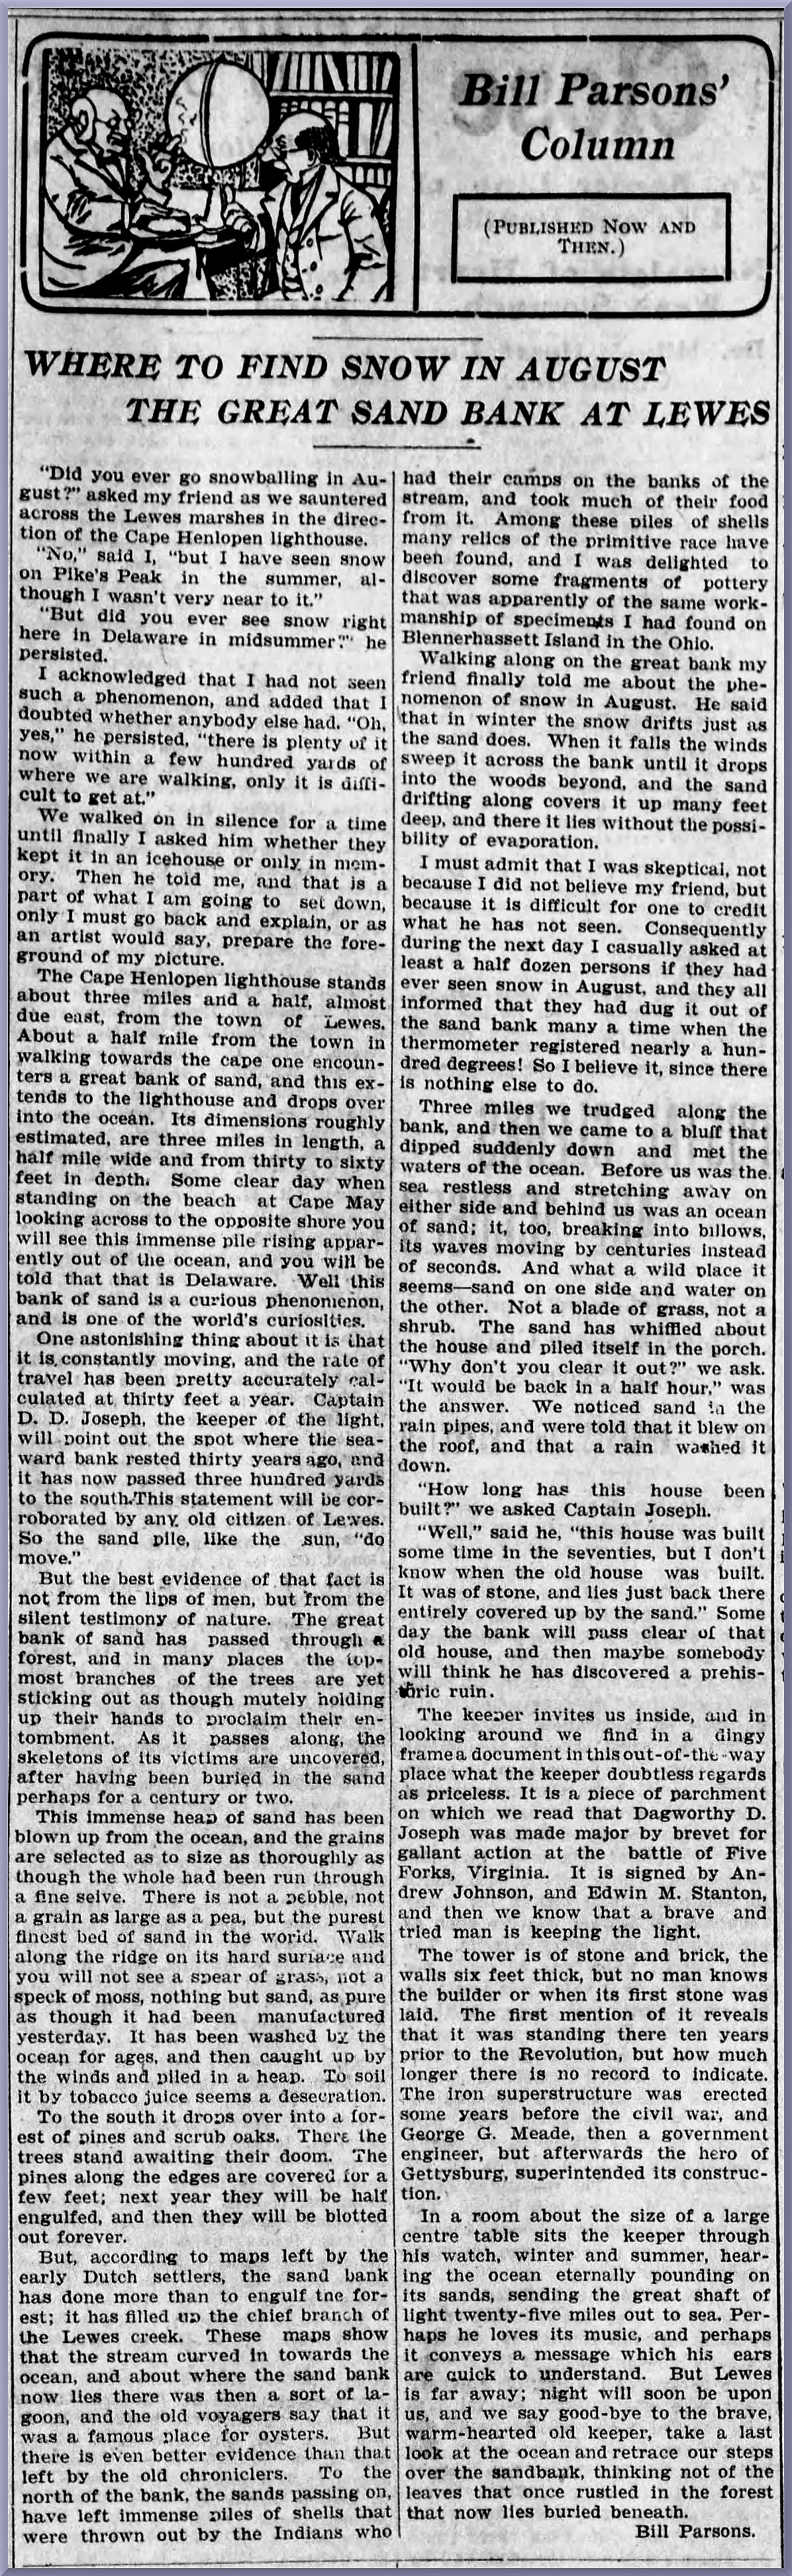 Bill Parsons Column, The Evening Journal (Wilmington, DE), 06 Jun 1903